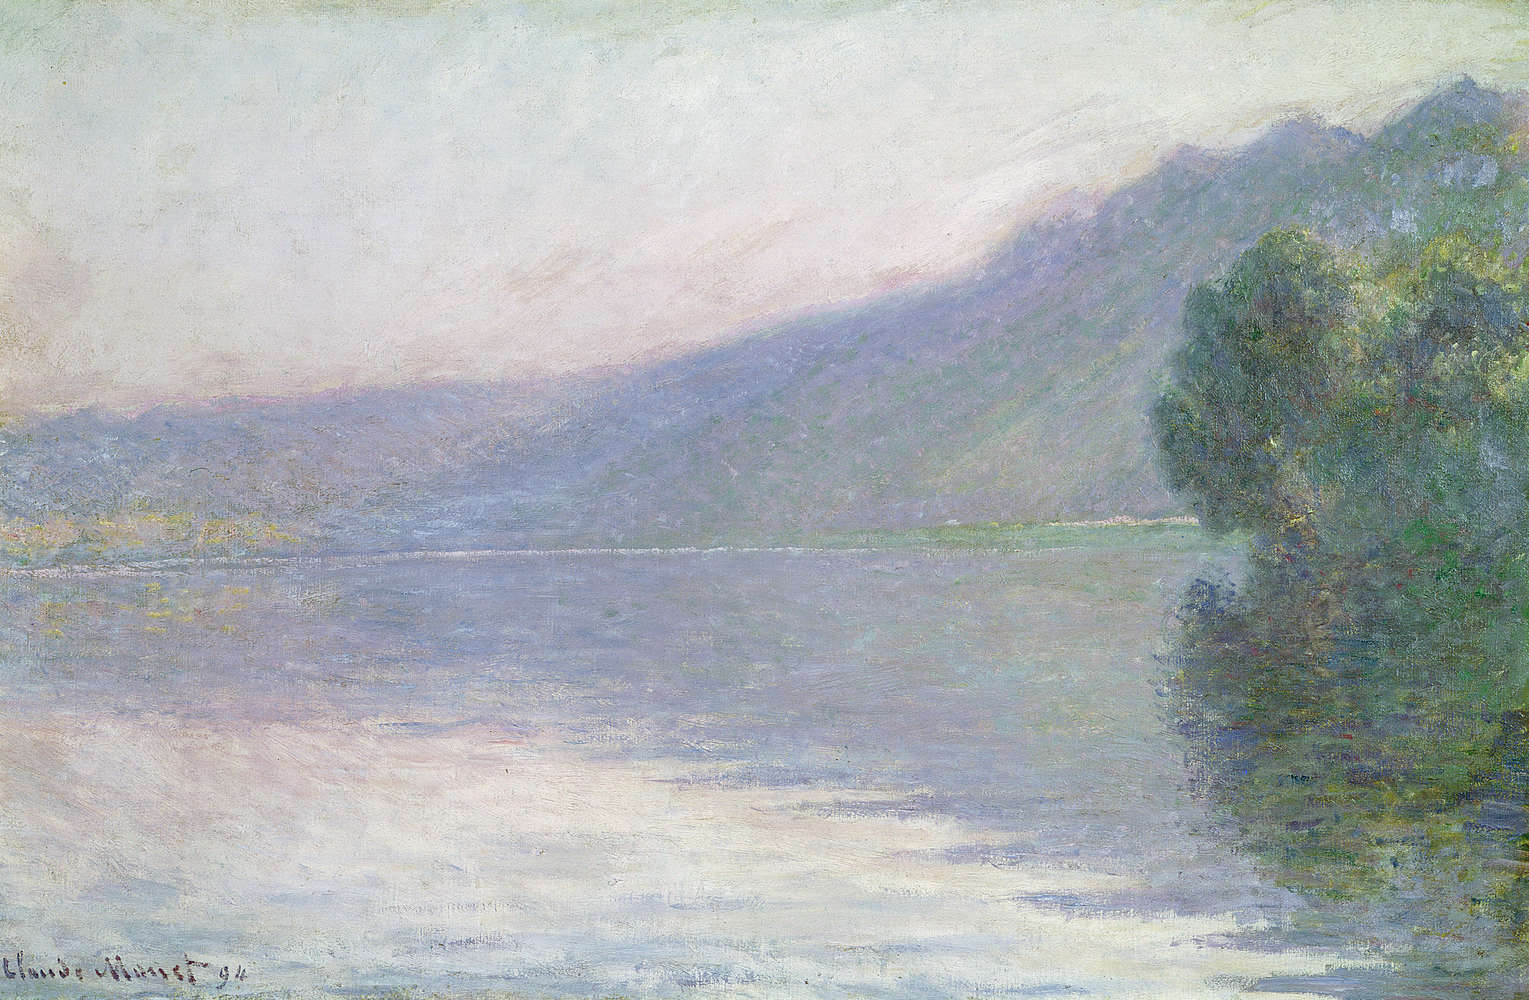             Muurschildering "De Seine bij PortVillez" van Claude Monet
        